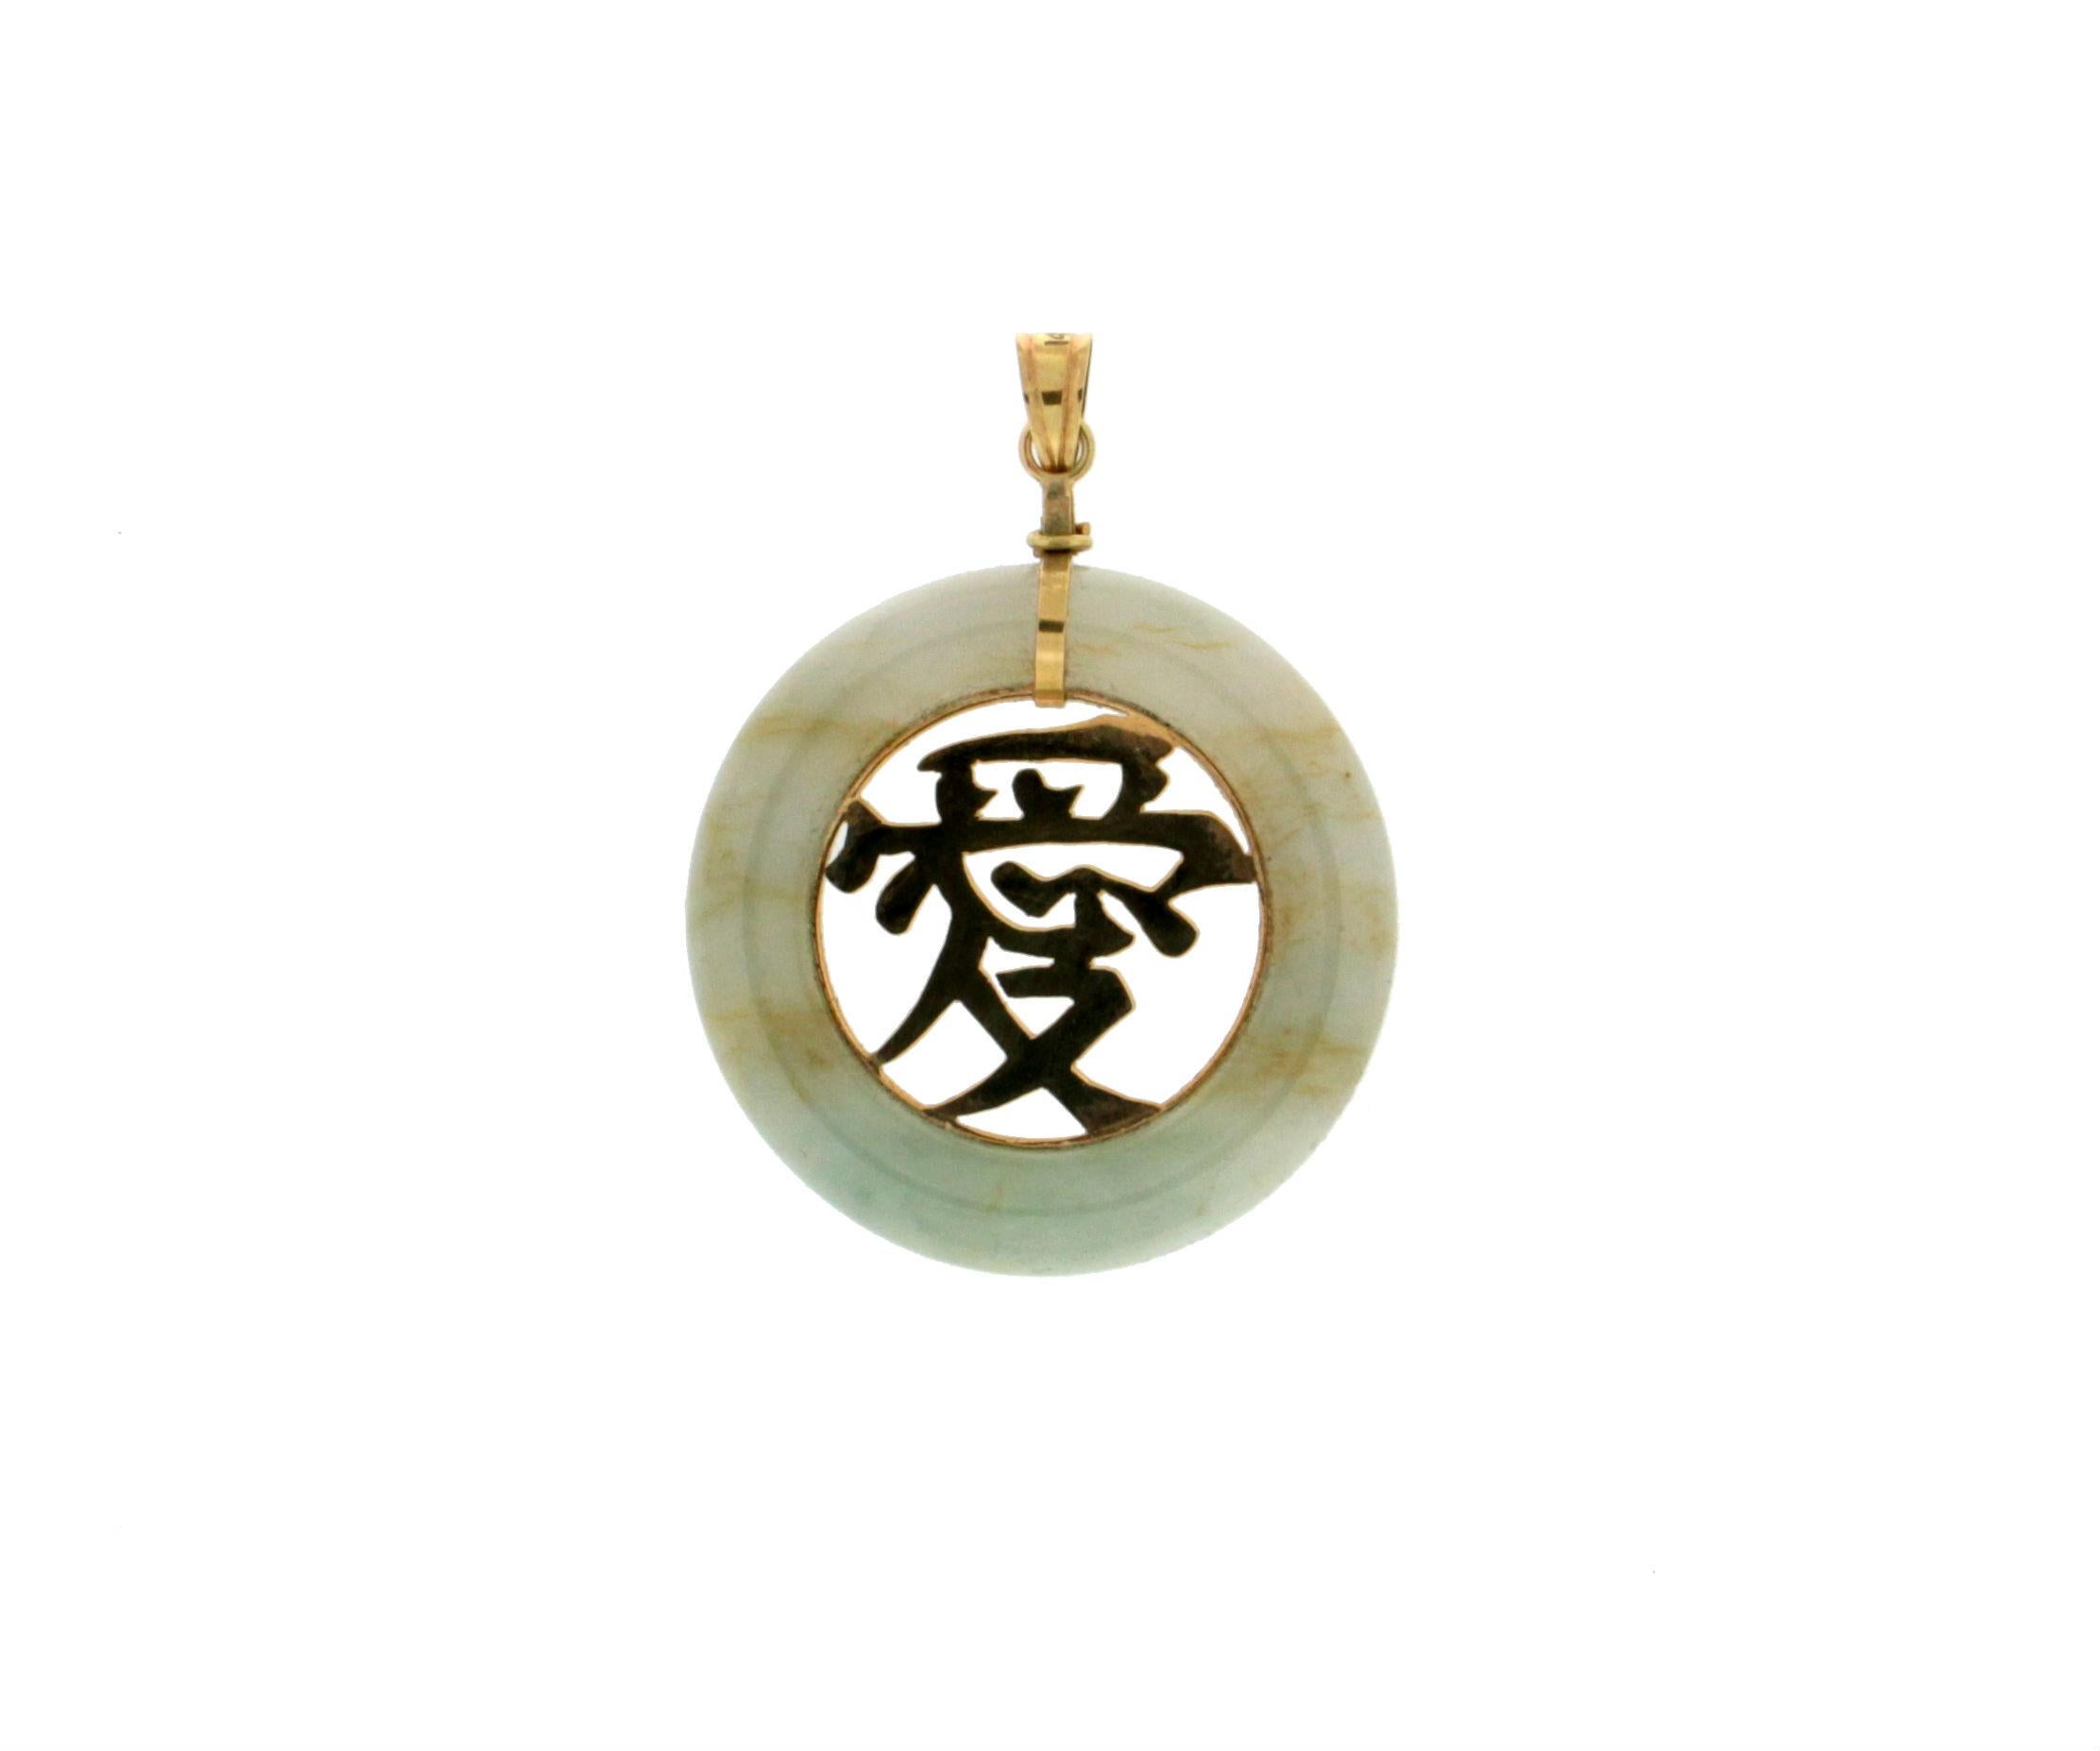 Uncut Handcraft 14 Karat Yellow Gold Jade Pendant Necklace